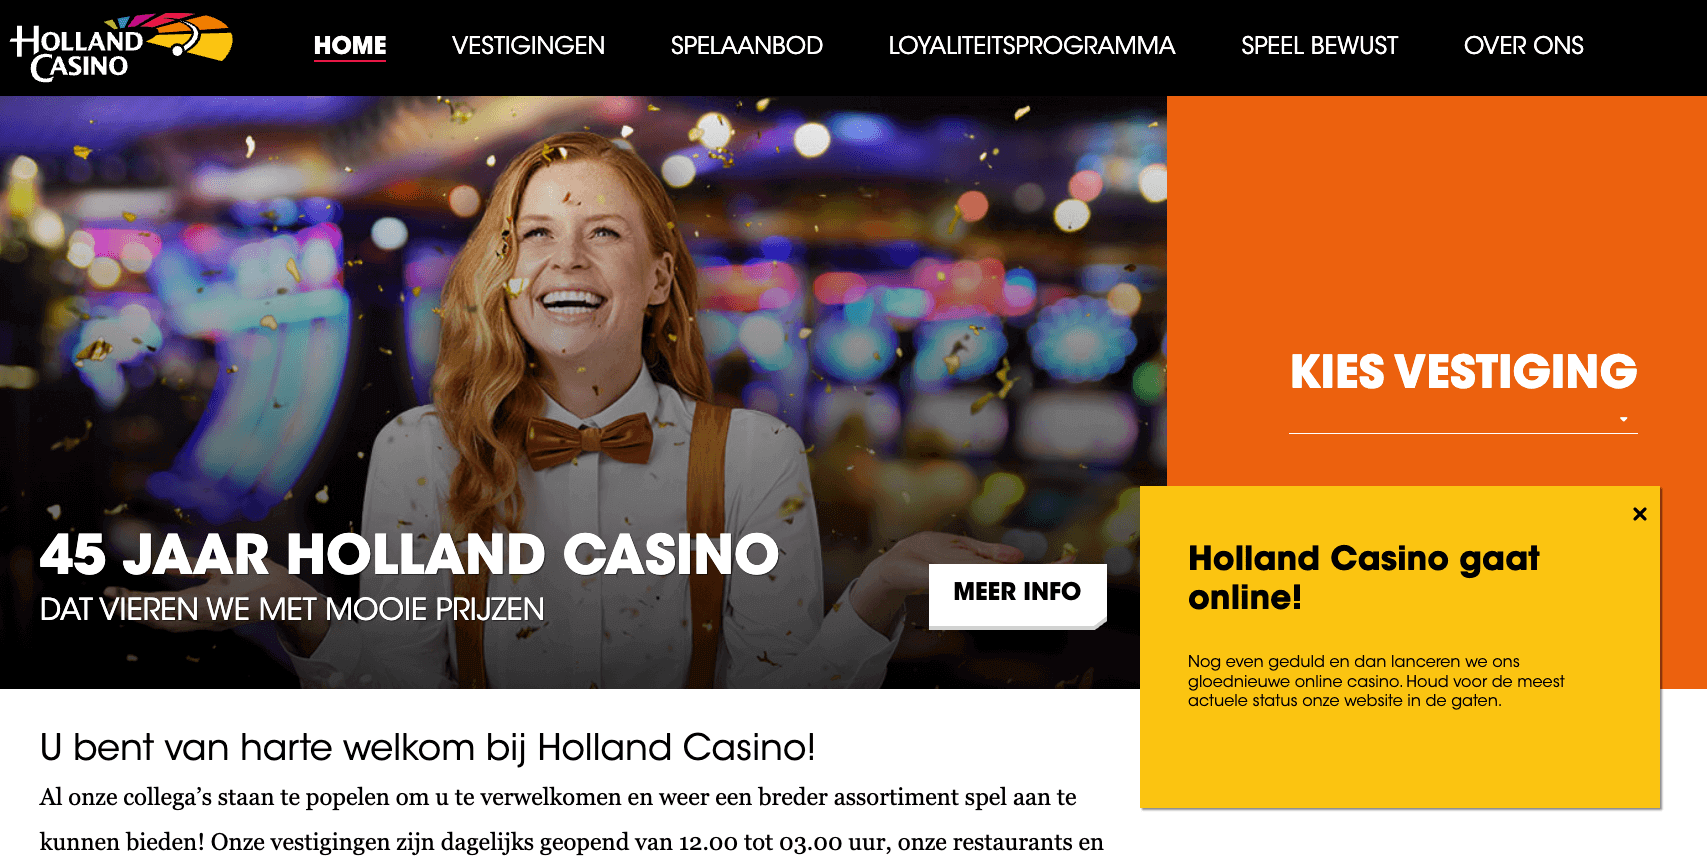 Aanbod casino sites in transitie gokkers wordt geduld gevraagd